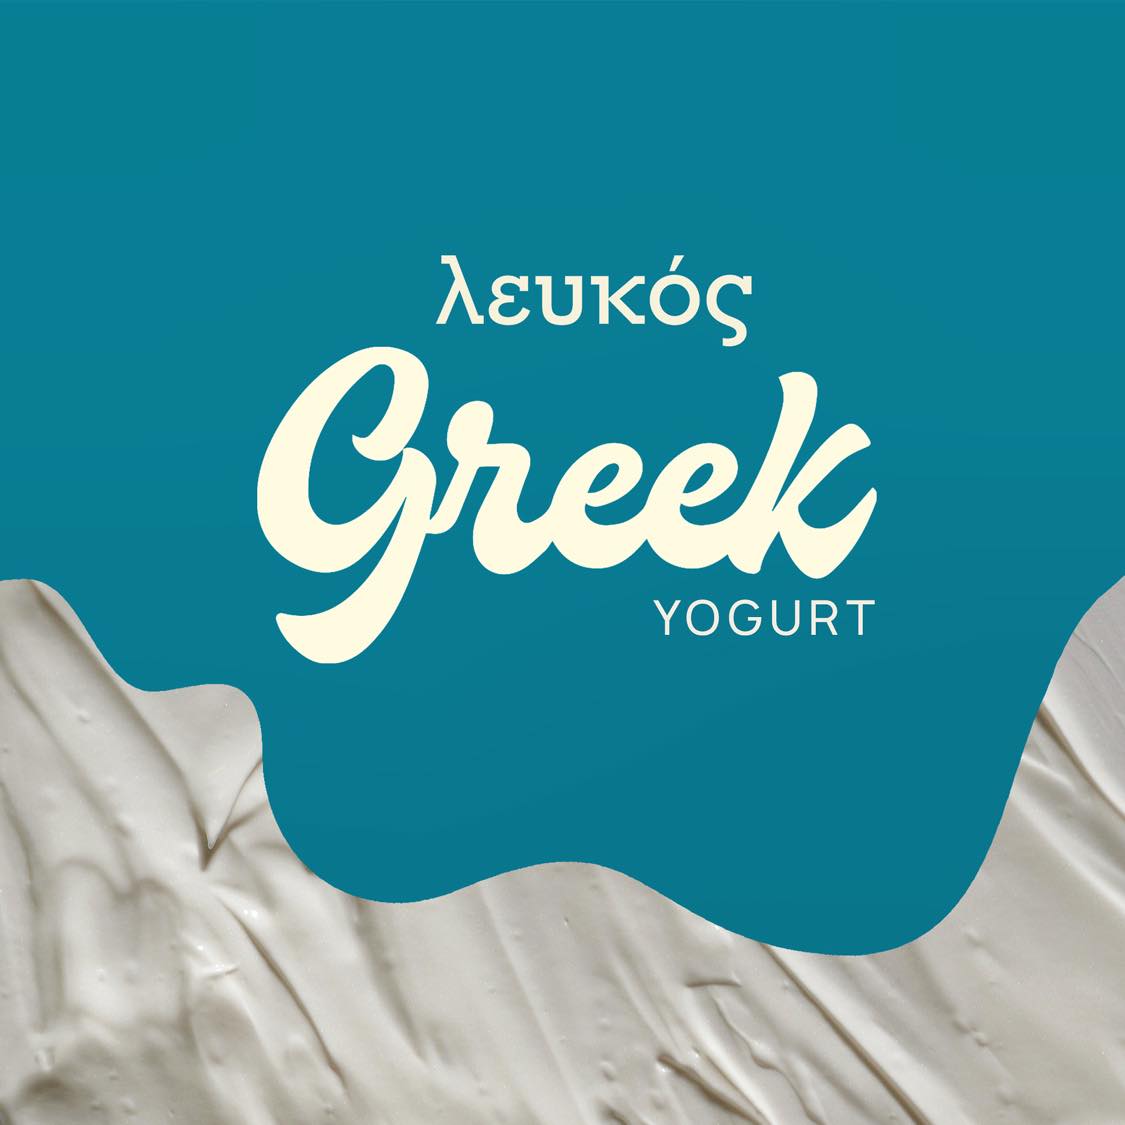 λευκός Greek Yogurt Packaging by Nouran Elsaigh